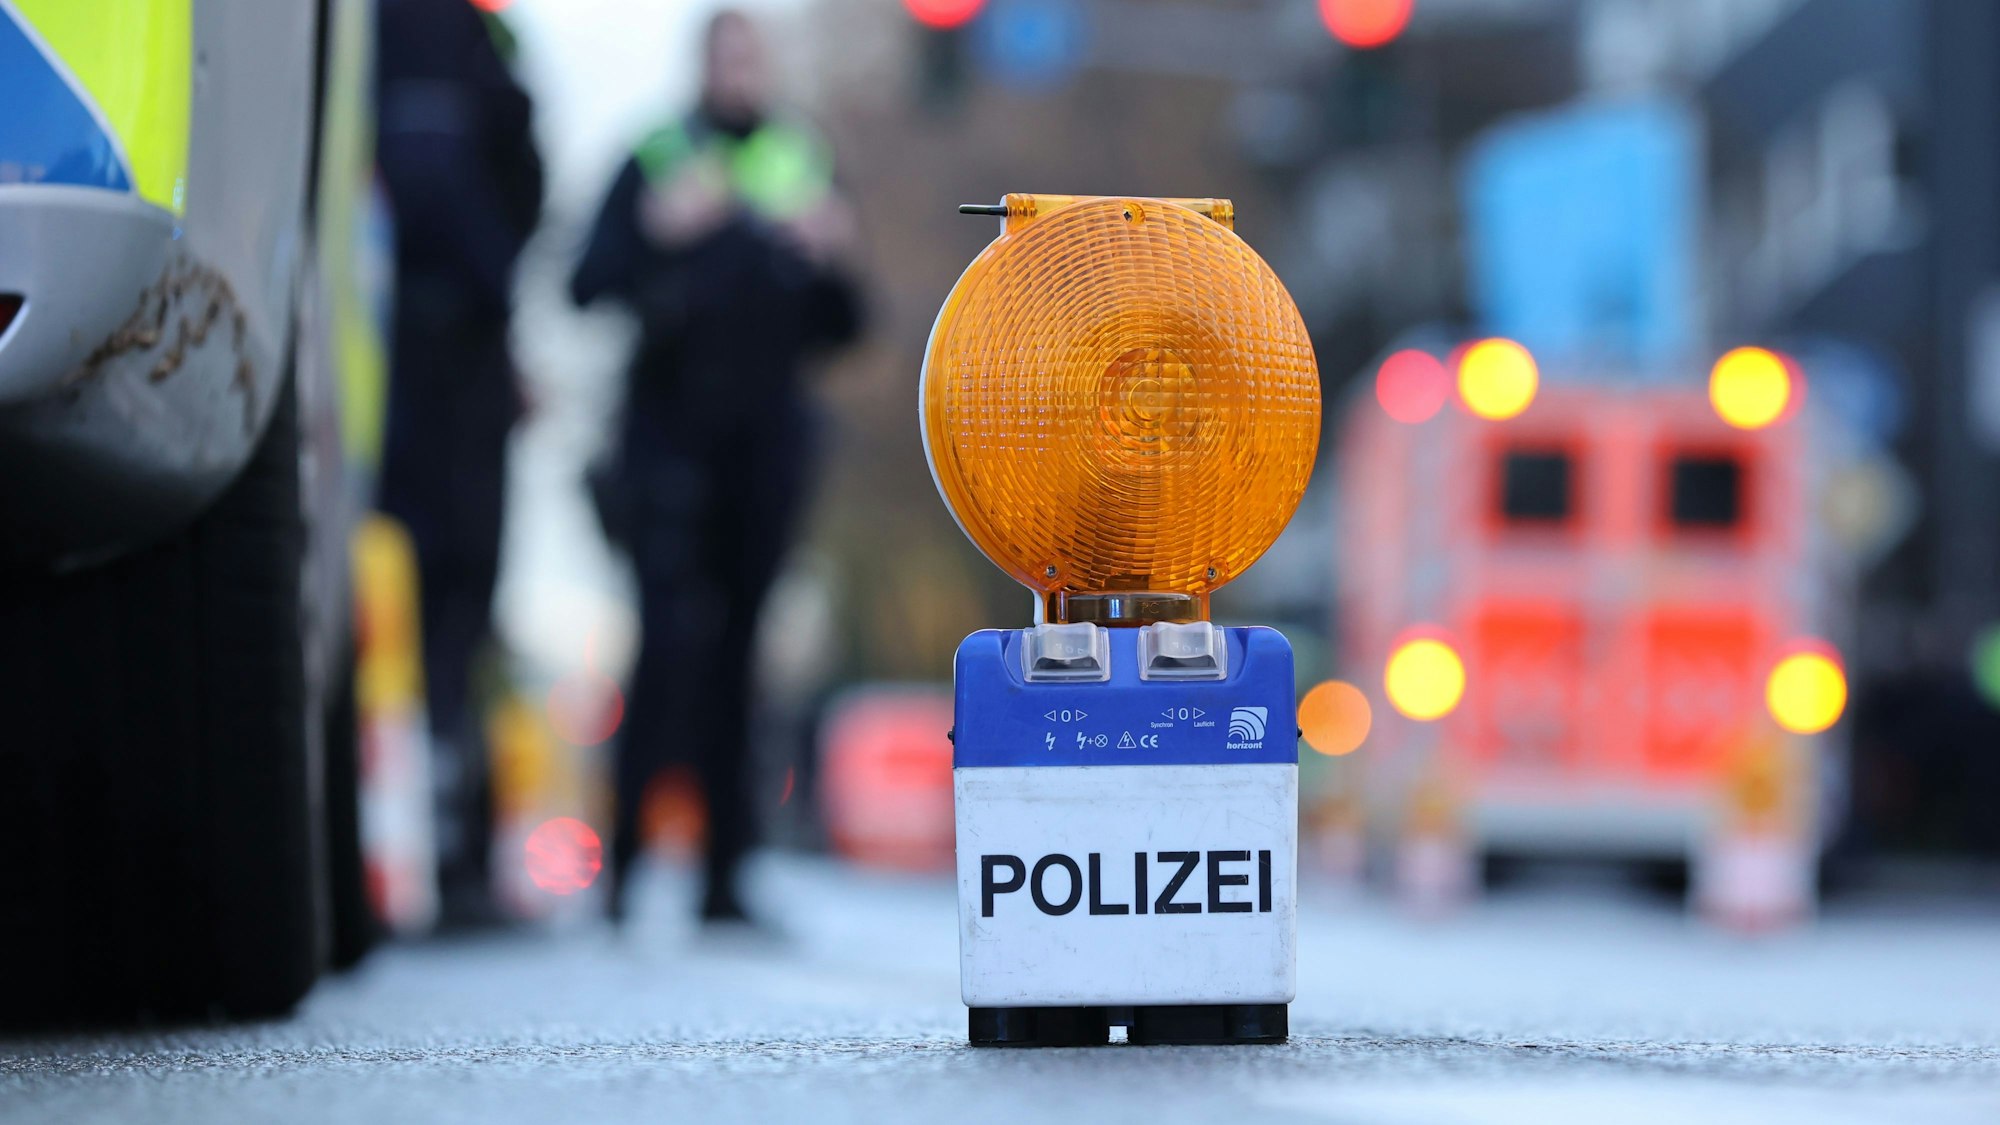 Eine Polizei-Warnbake steht auf einer Straße in Köln (Symbolbild). Nach einem schweren Unfall in Köln ist ein 64-jähriger Mann verstorben.
